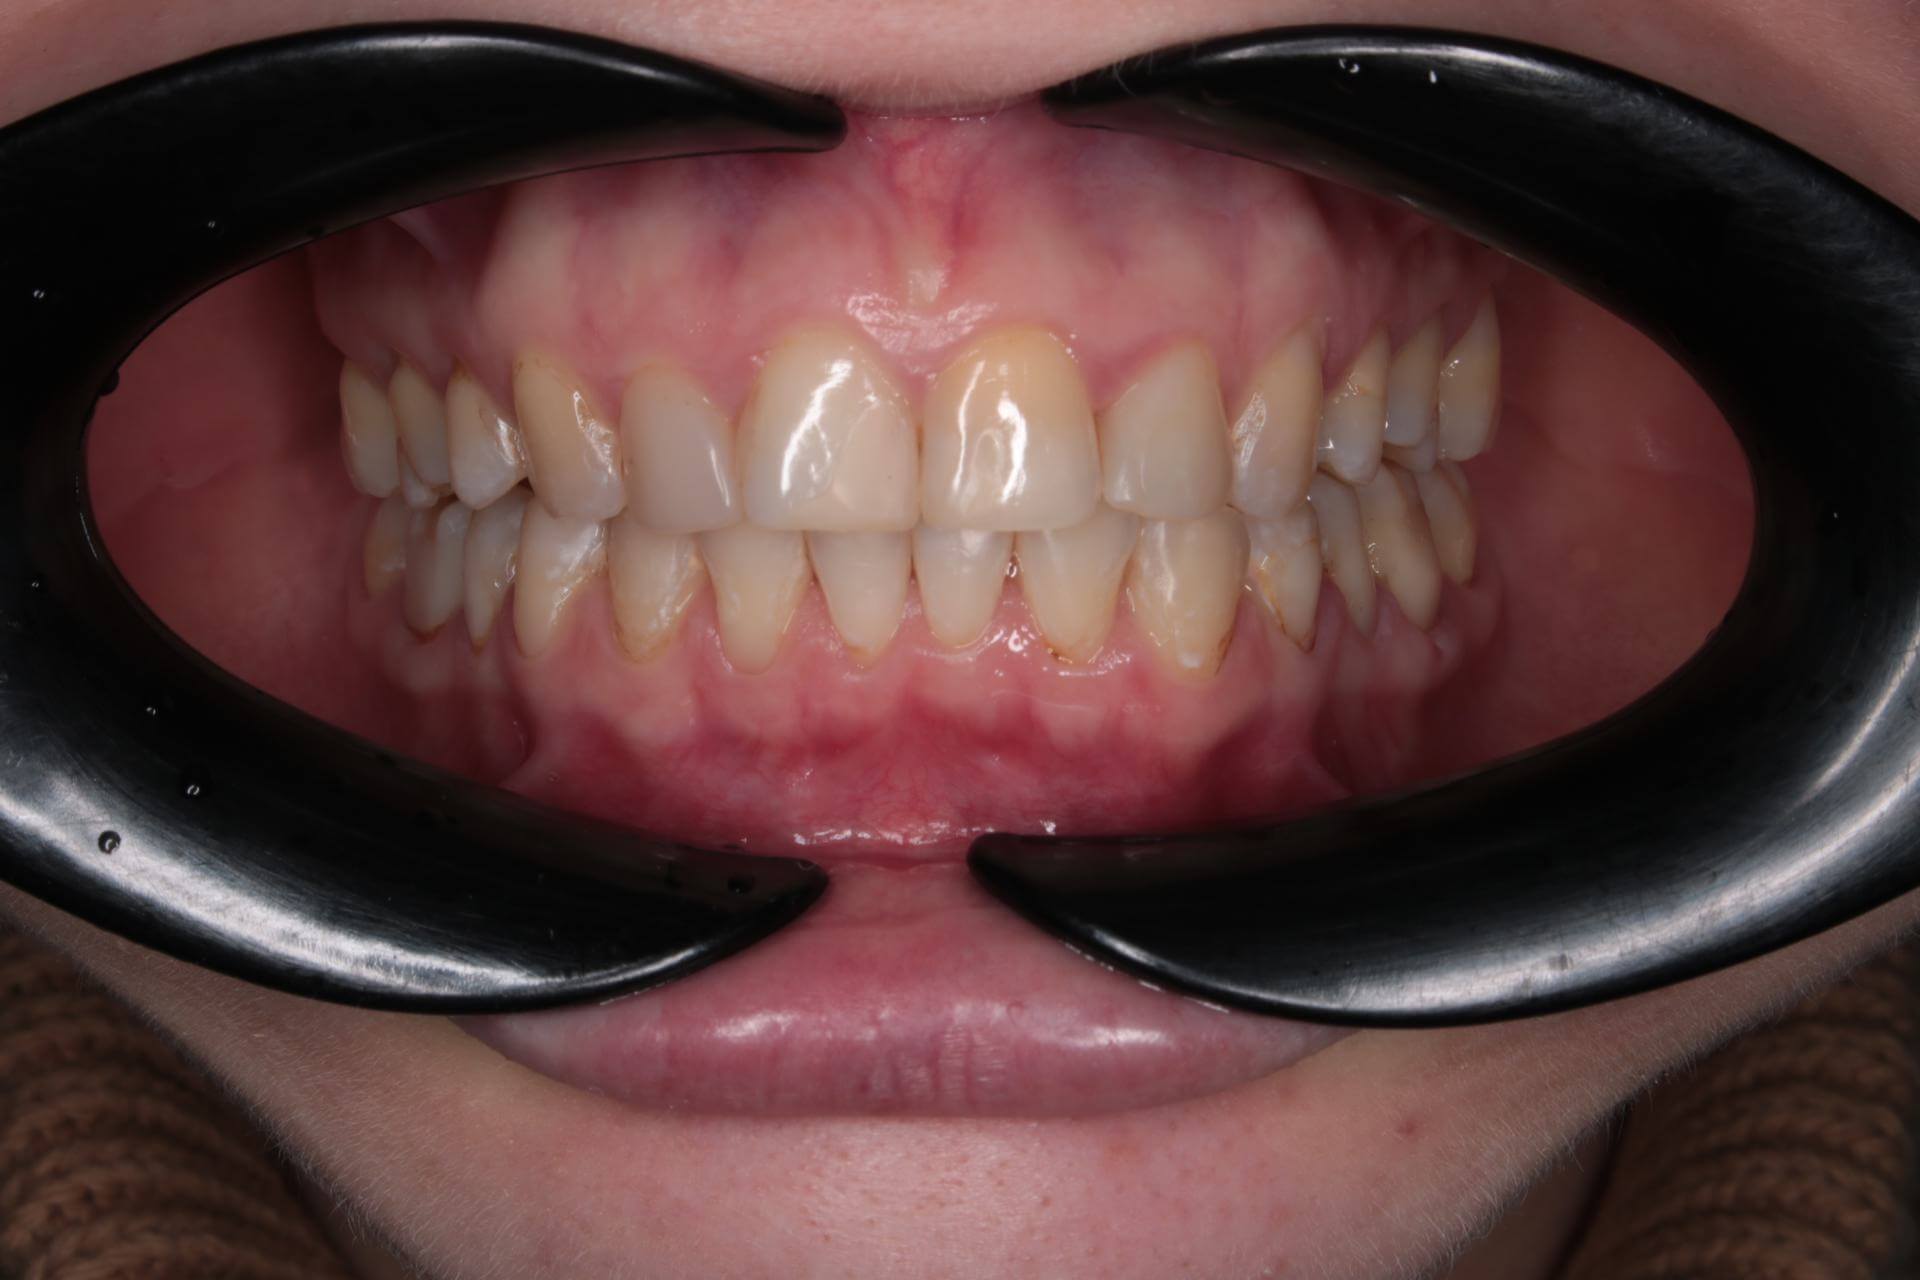 Скученность зубов на нижней челюсти. Женщина, 35 лет.